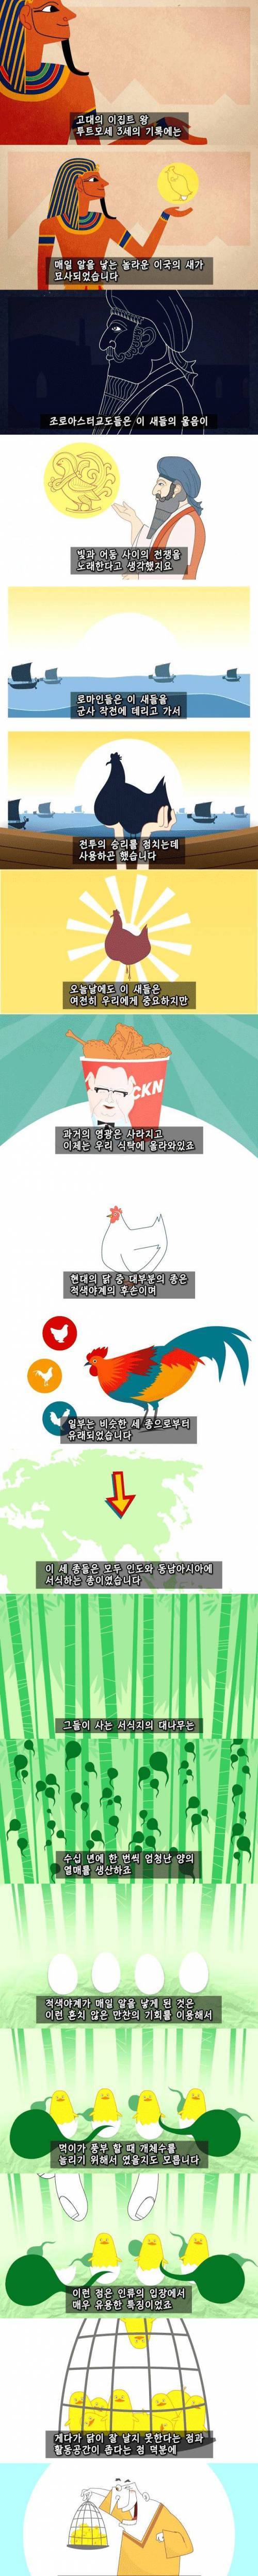 7 치킨의 역사.jpg